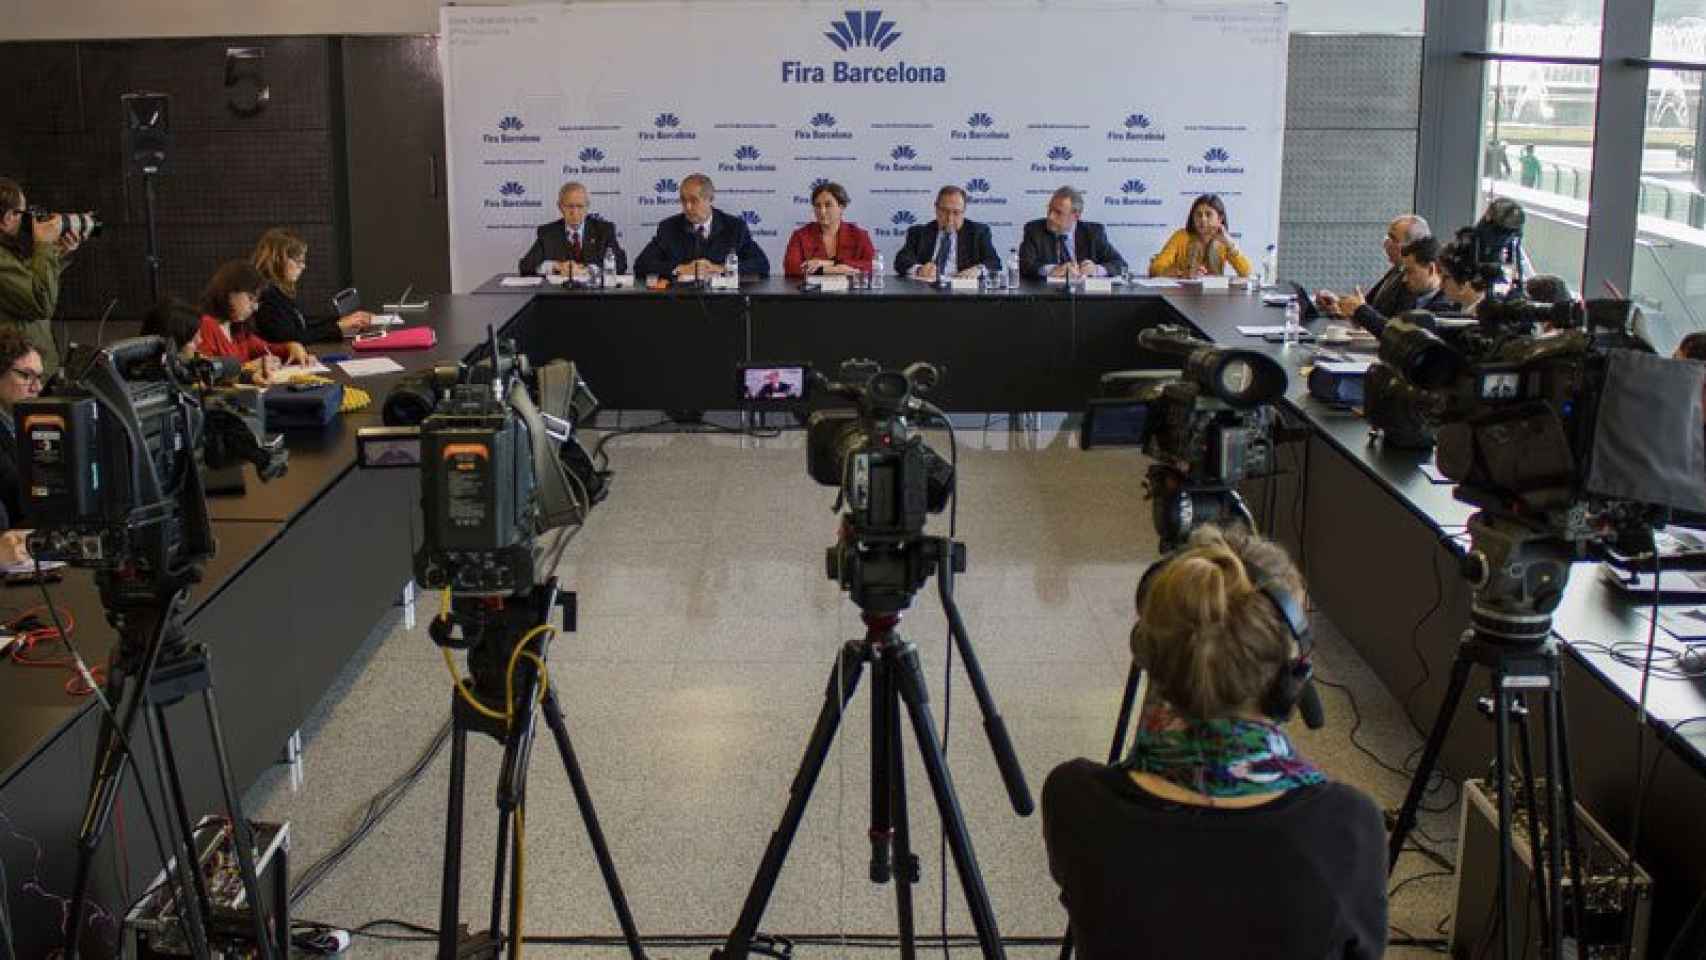 La cúpula de Fira Barcelona presenta los resultados de 2015